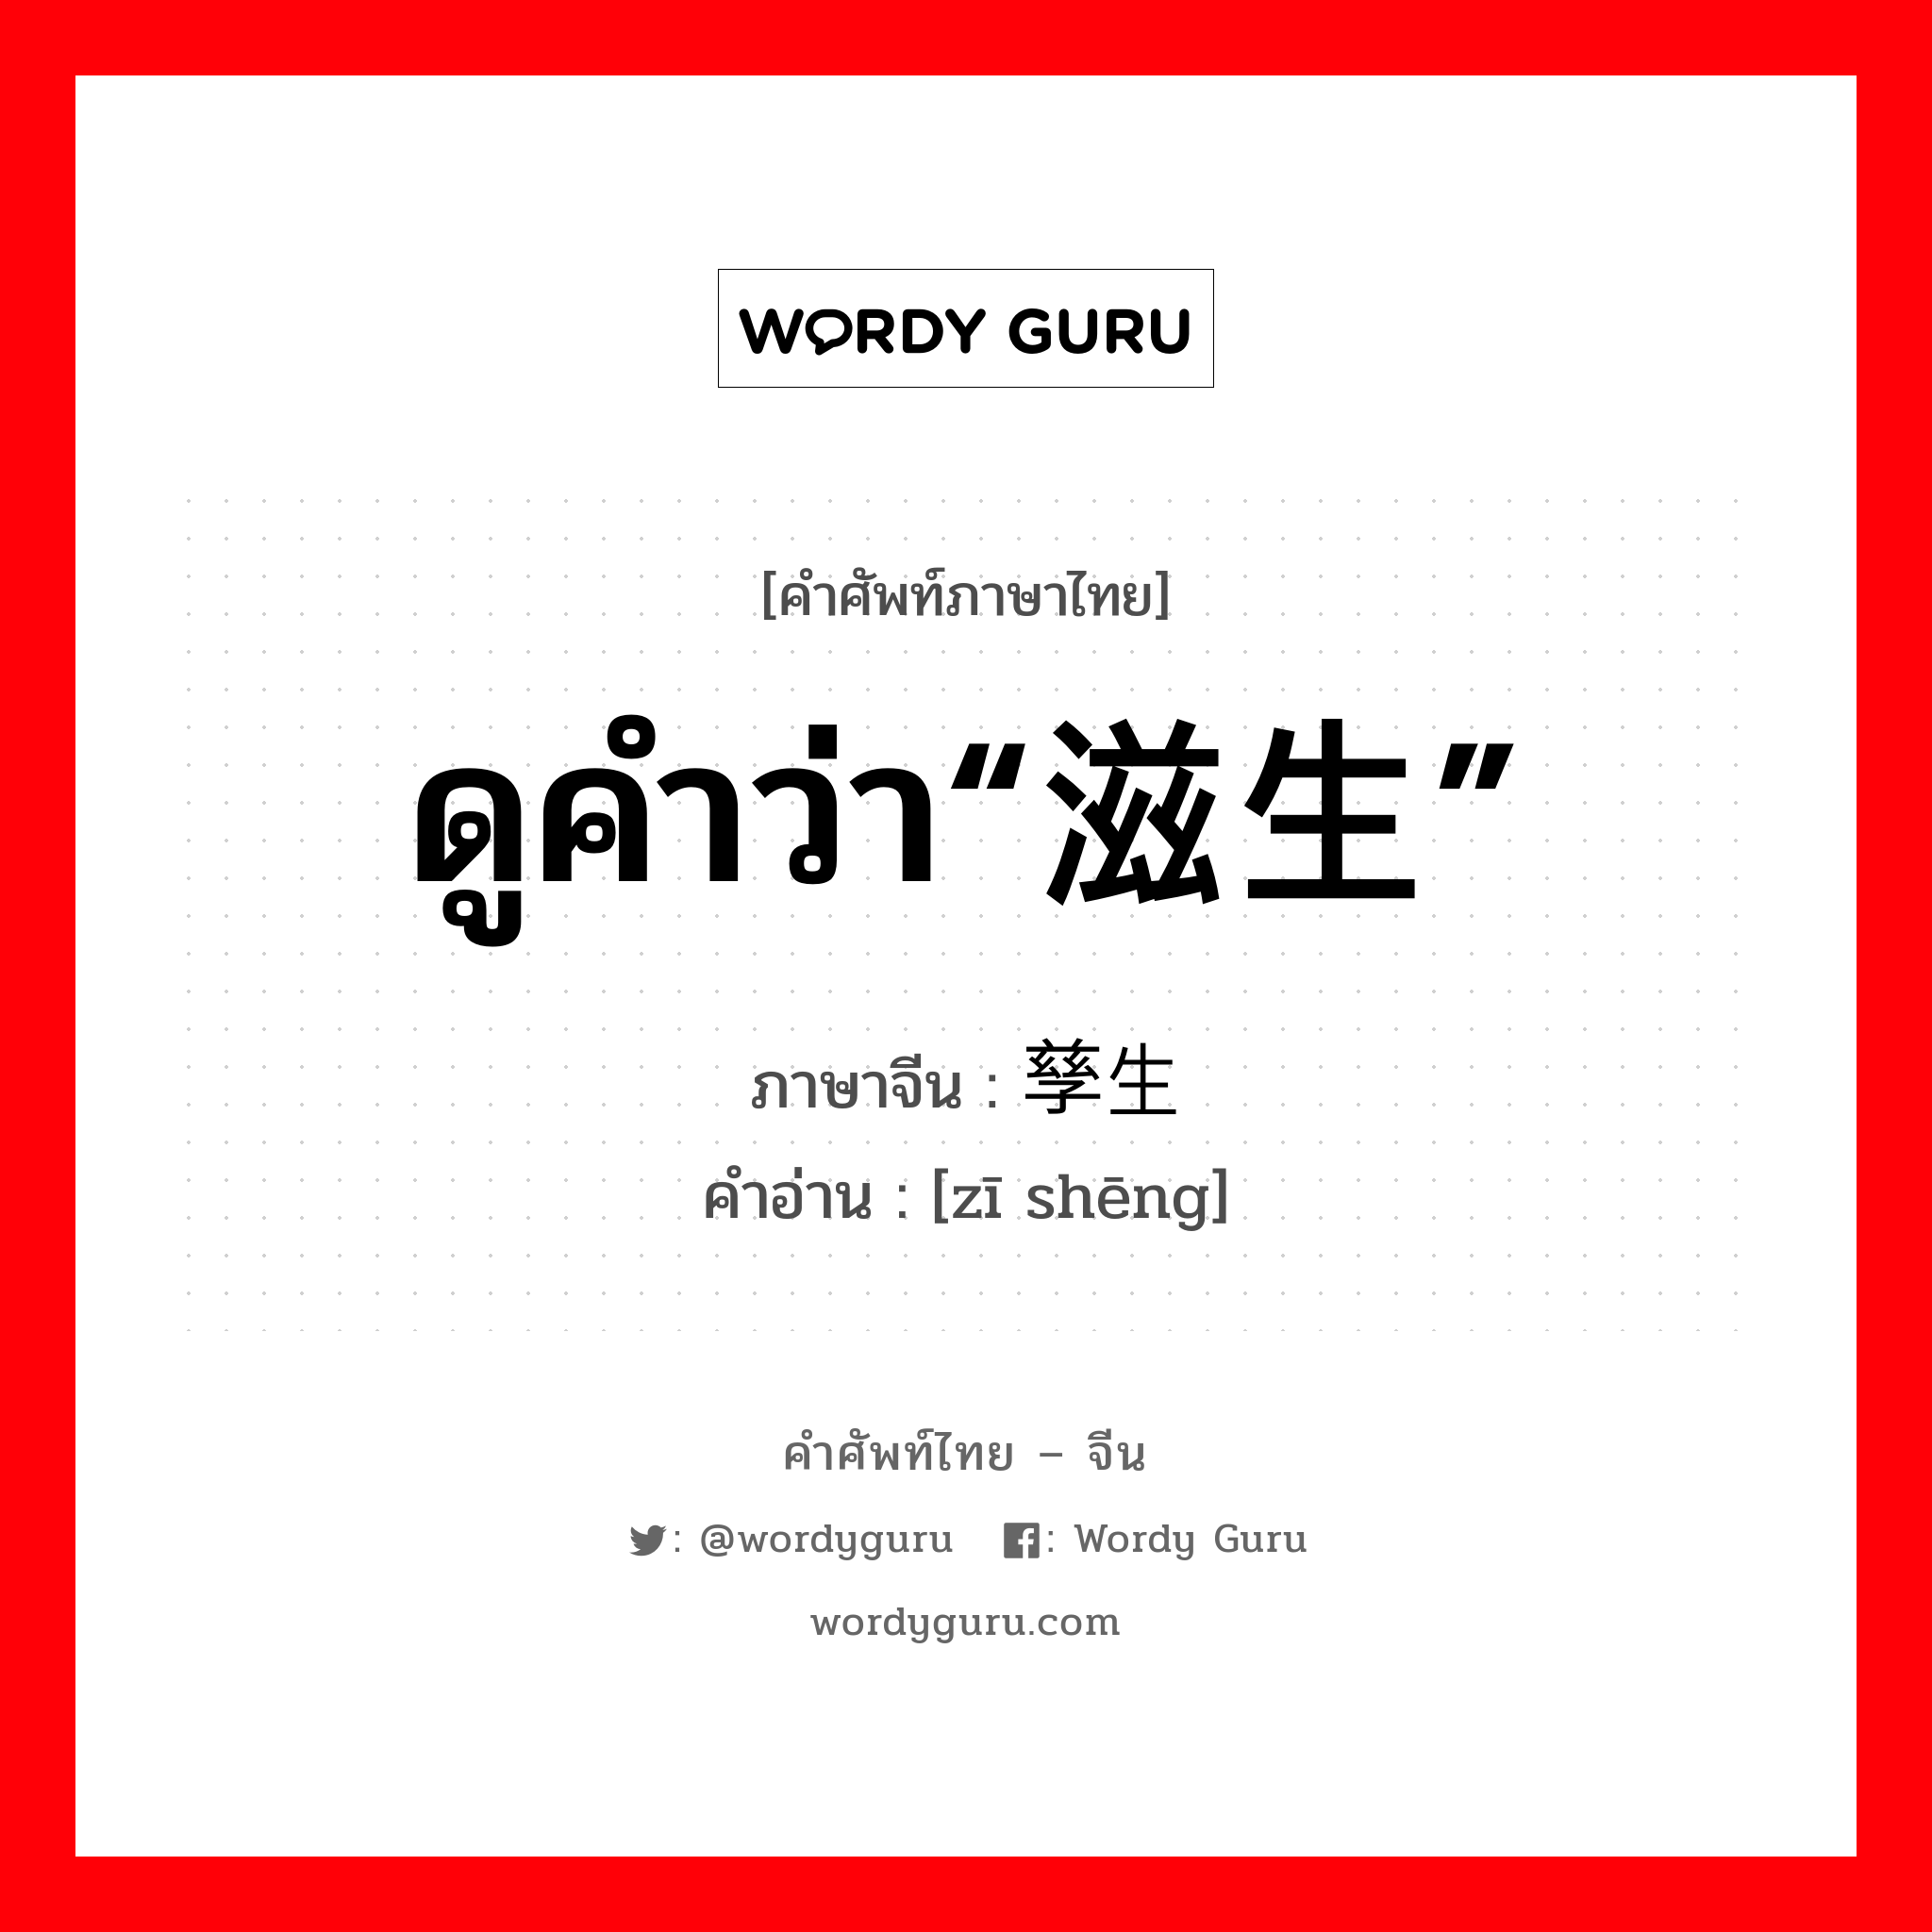 ดูคำว่า“滋生” ภาษาจีนคืออะไร, คำศัพท์ภาษาไทย - จีน ดูคำว่า“滋生” ภาษาจีน 孳生 คำอ่าน [zī shēng]